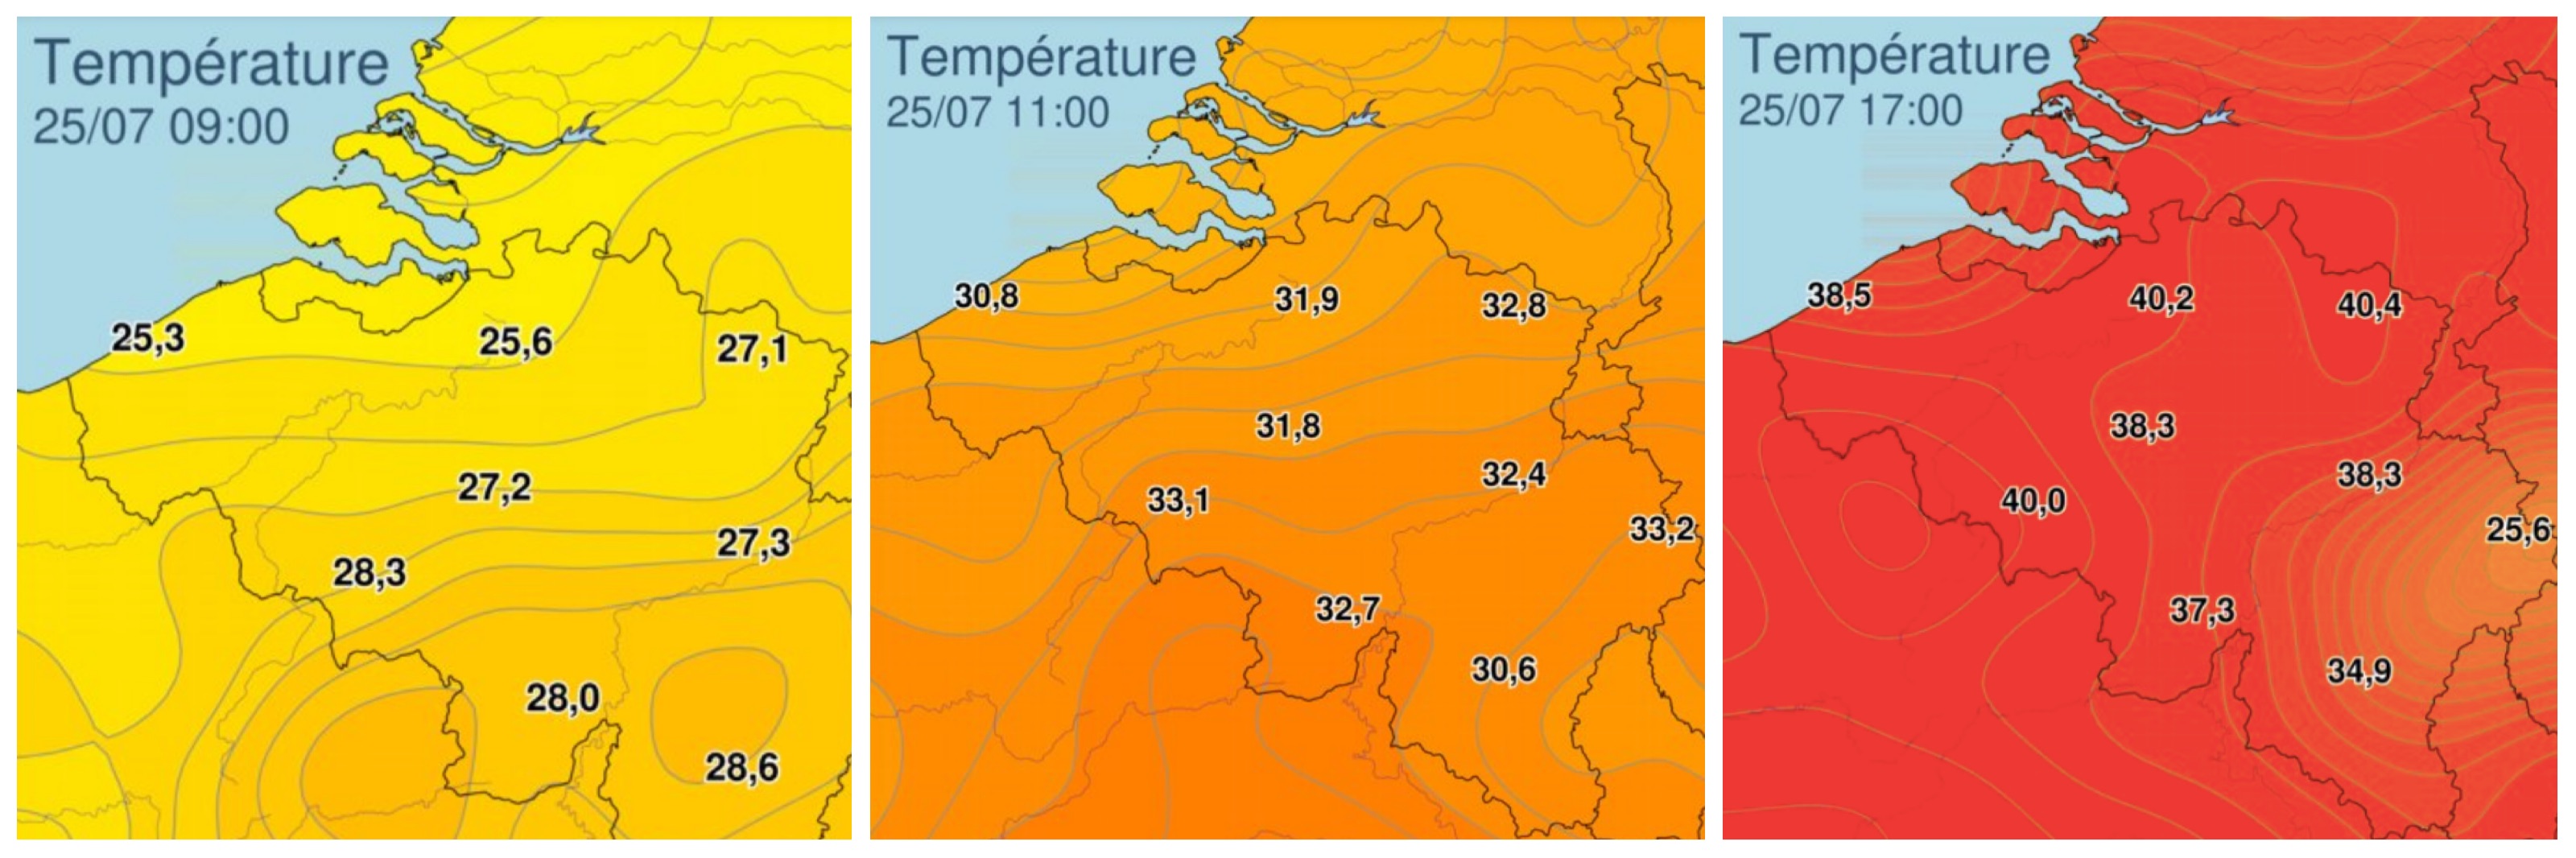 Records de températures en Belgique, le 25 juillet 2019. (Source: IRM)